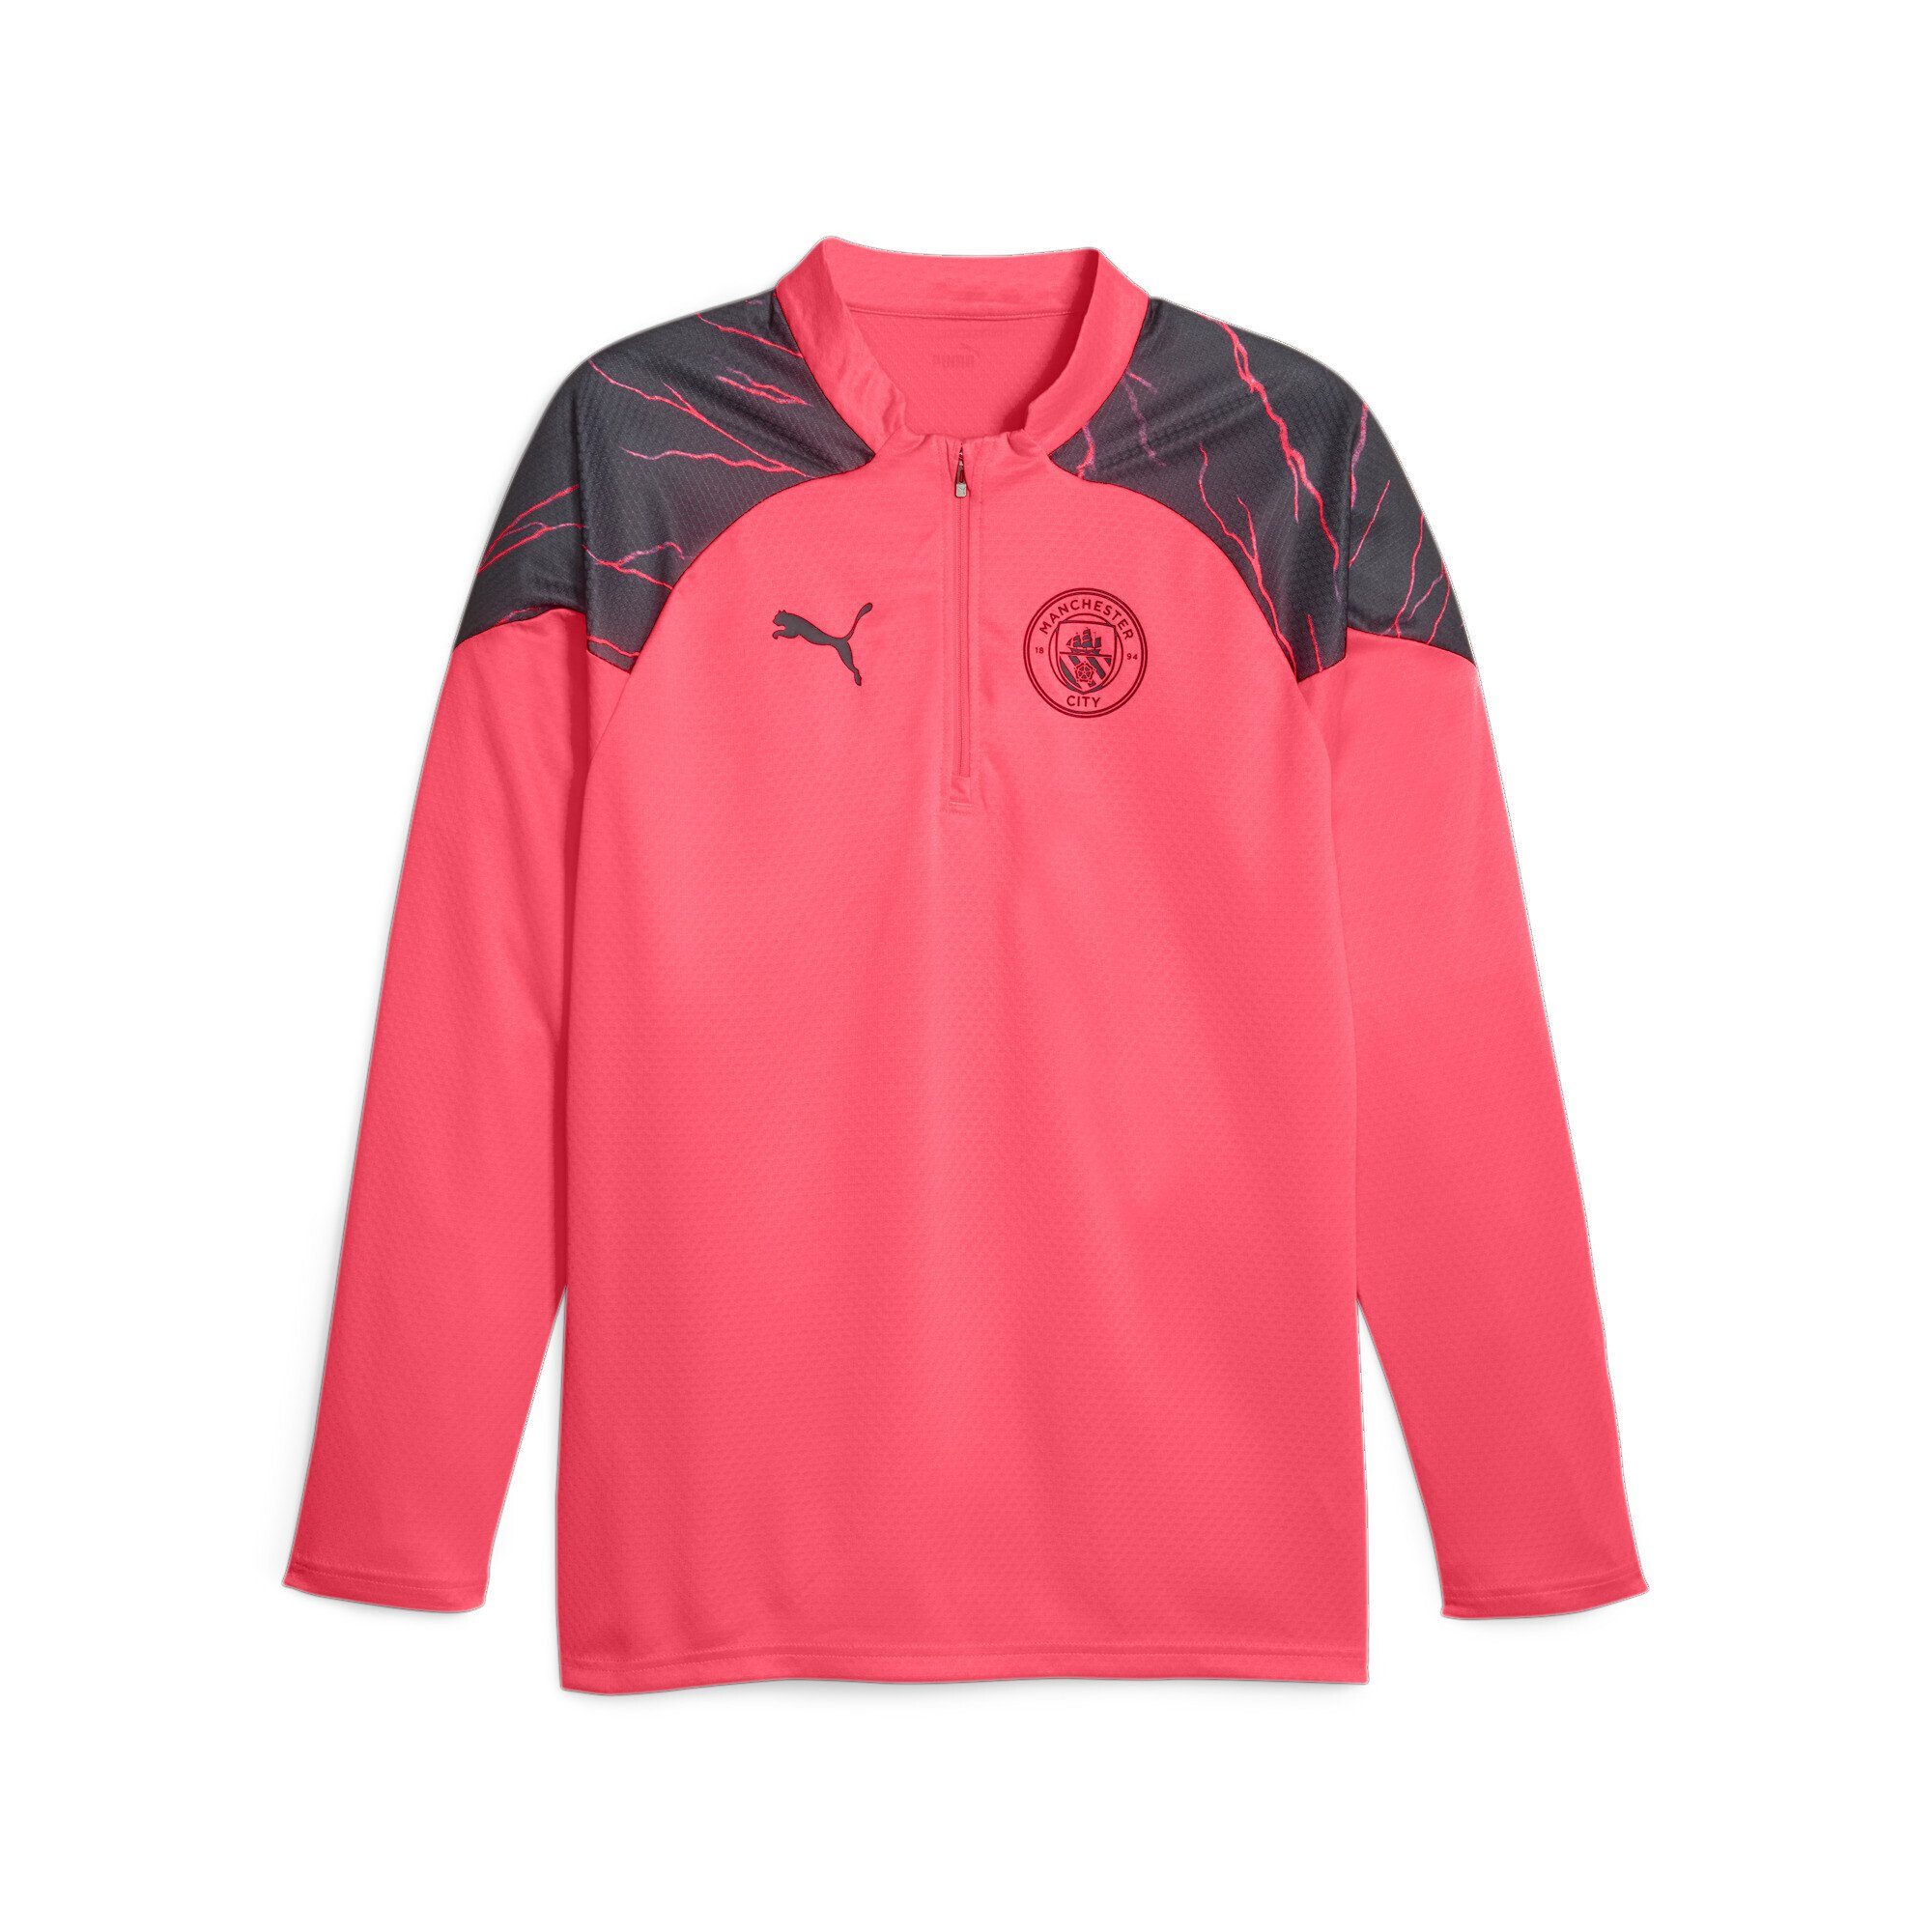 mit Pink Sunset City PUMA Viertelreißverschluss Black Manchester Glow Fußball-Trainings-Top Trainingsshirt Navy Dark